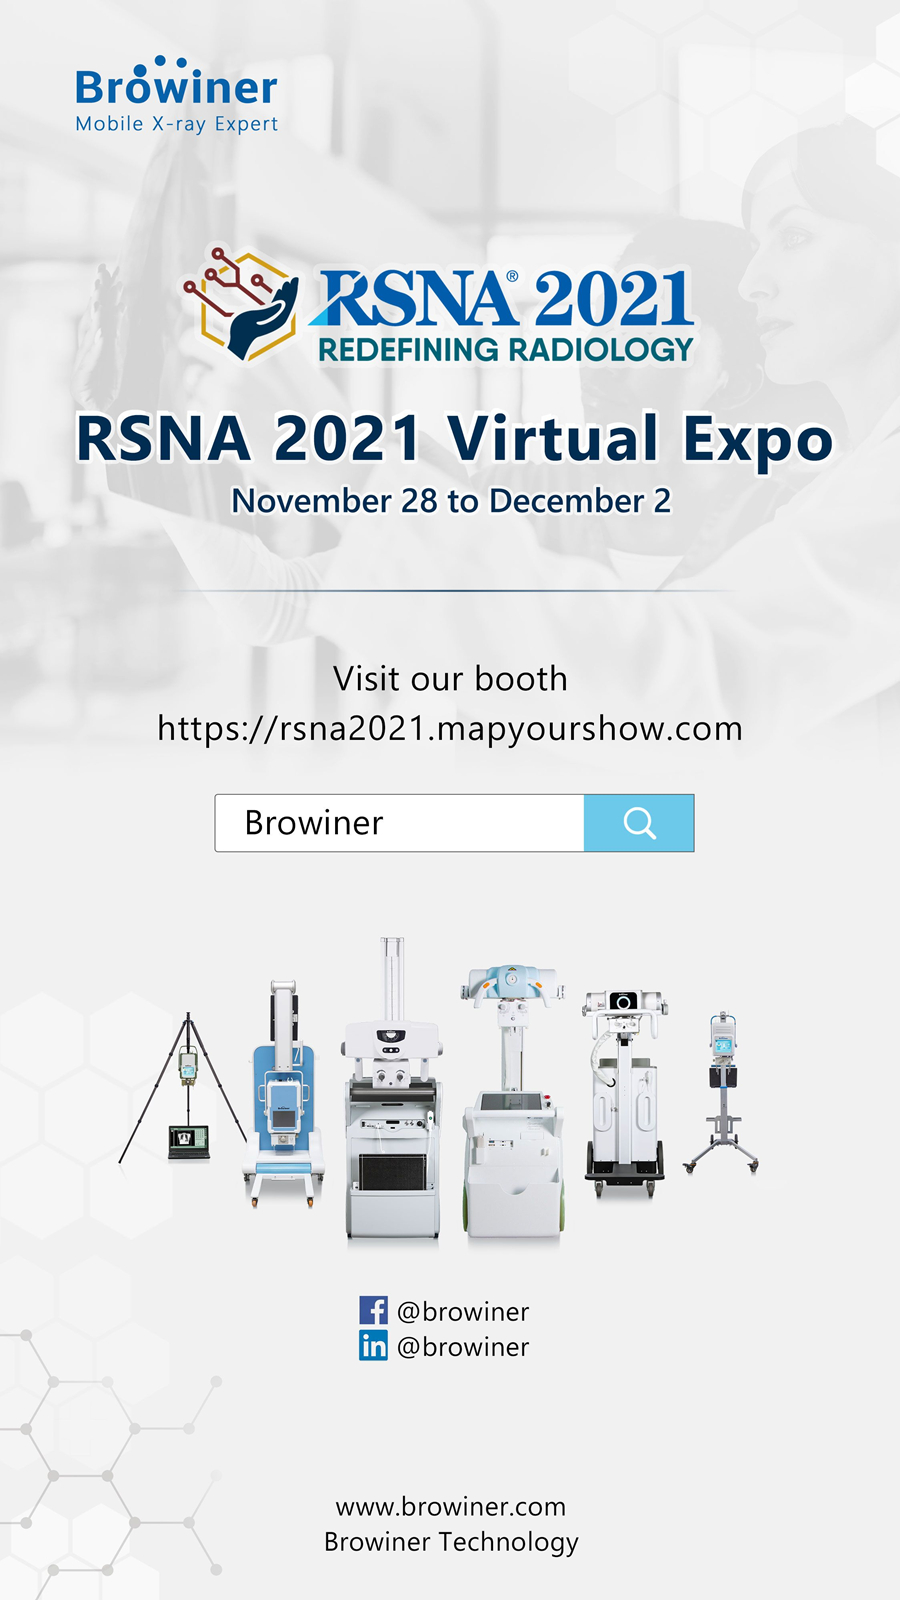 RSNA 2021 Virtual Expo,Mobile X ray,Browiner